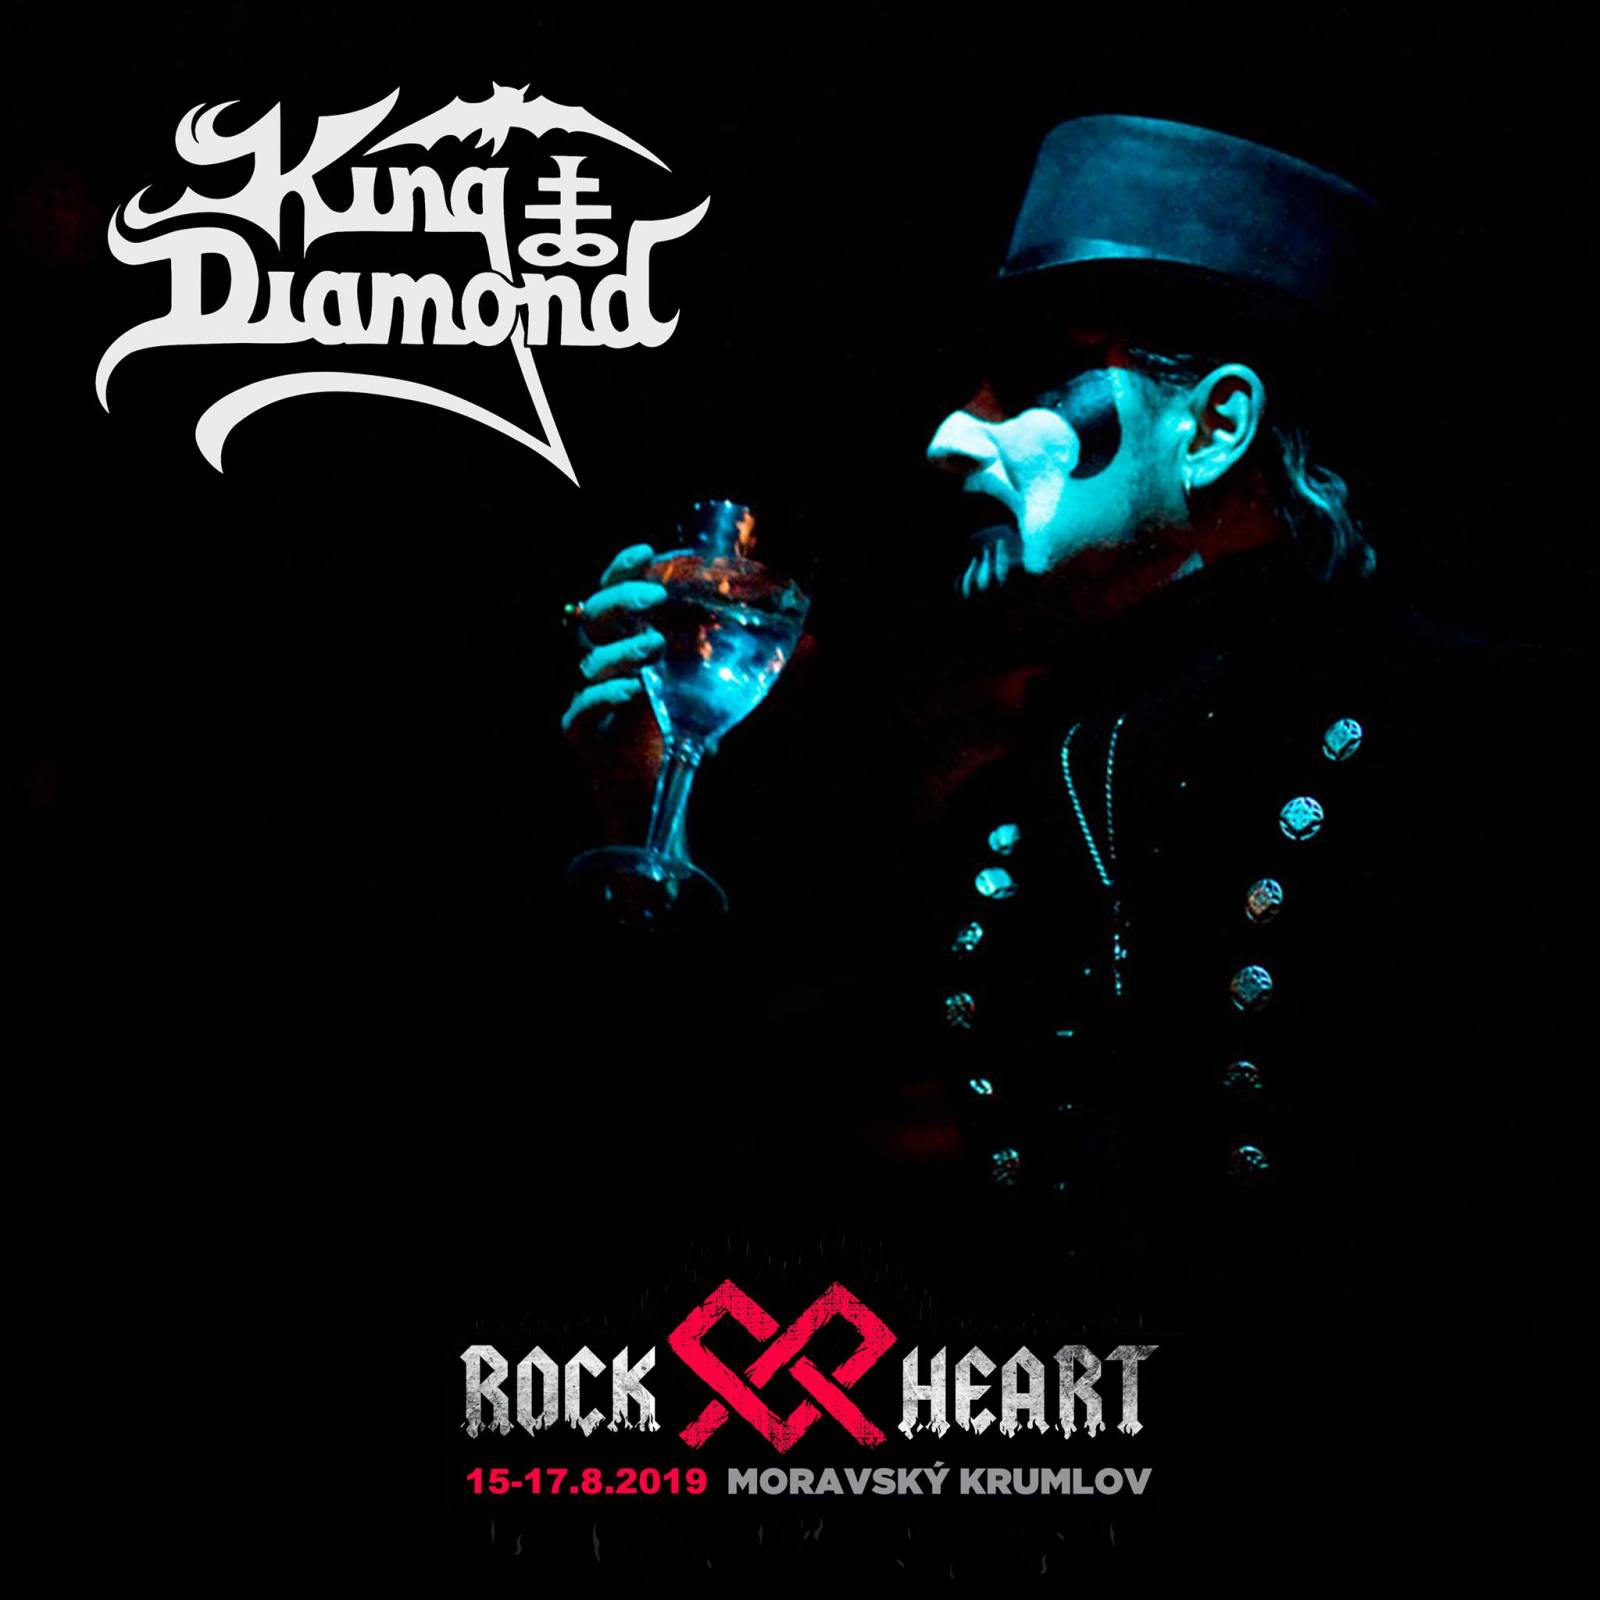 Festival Rock Heart zve do Moravského Krumlova. Zahrají Apocalyptica, Avatar Country nebo King Diamond